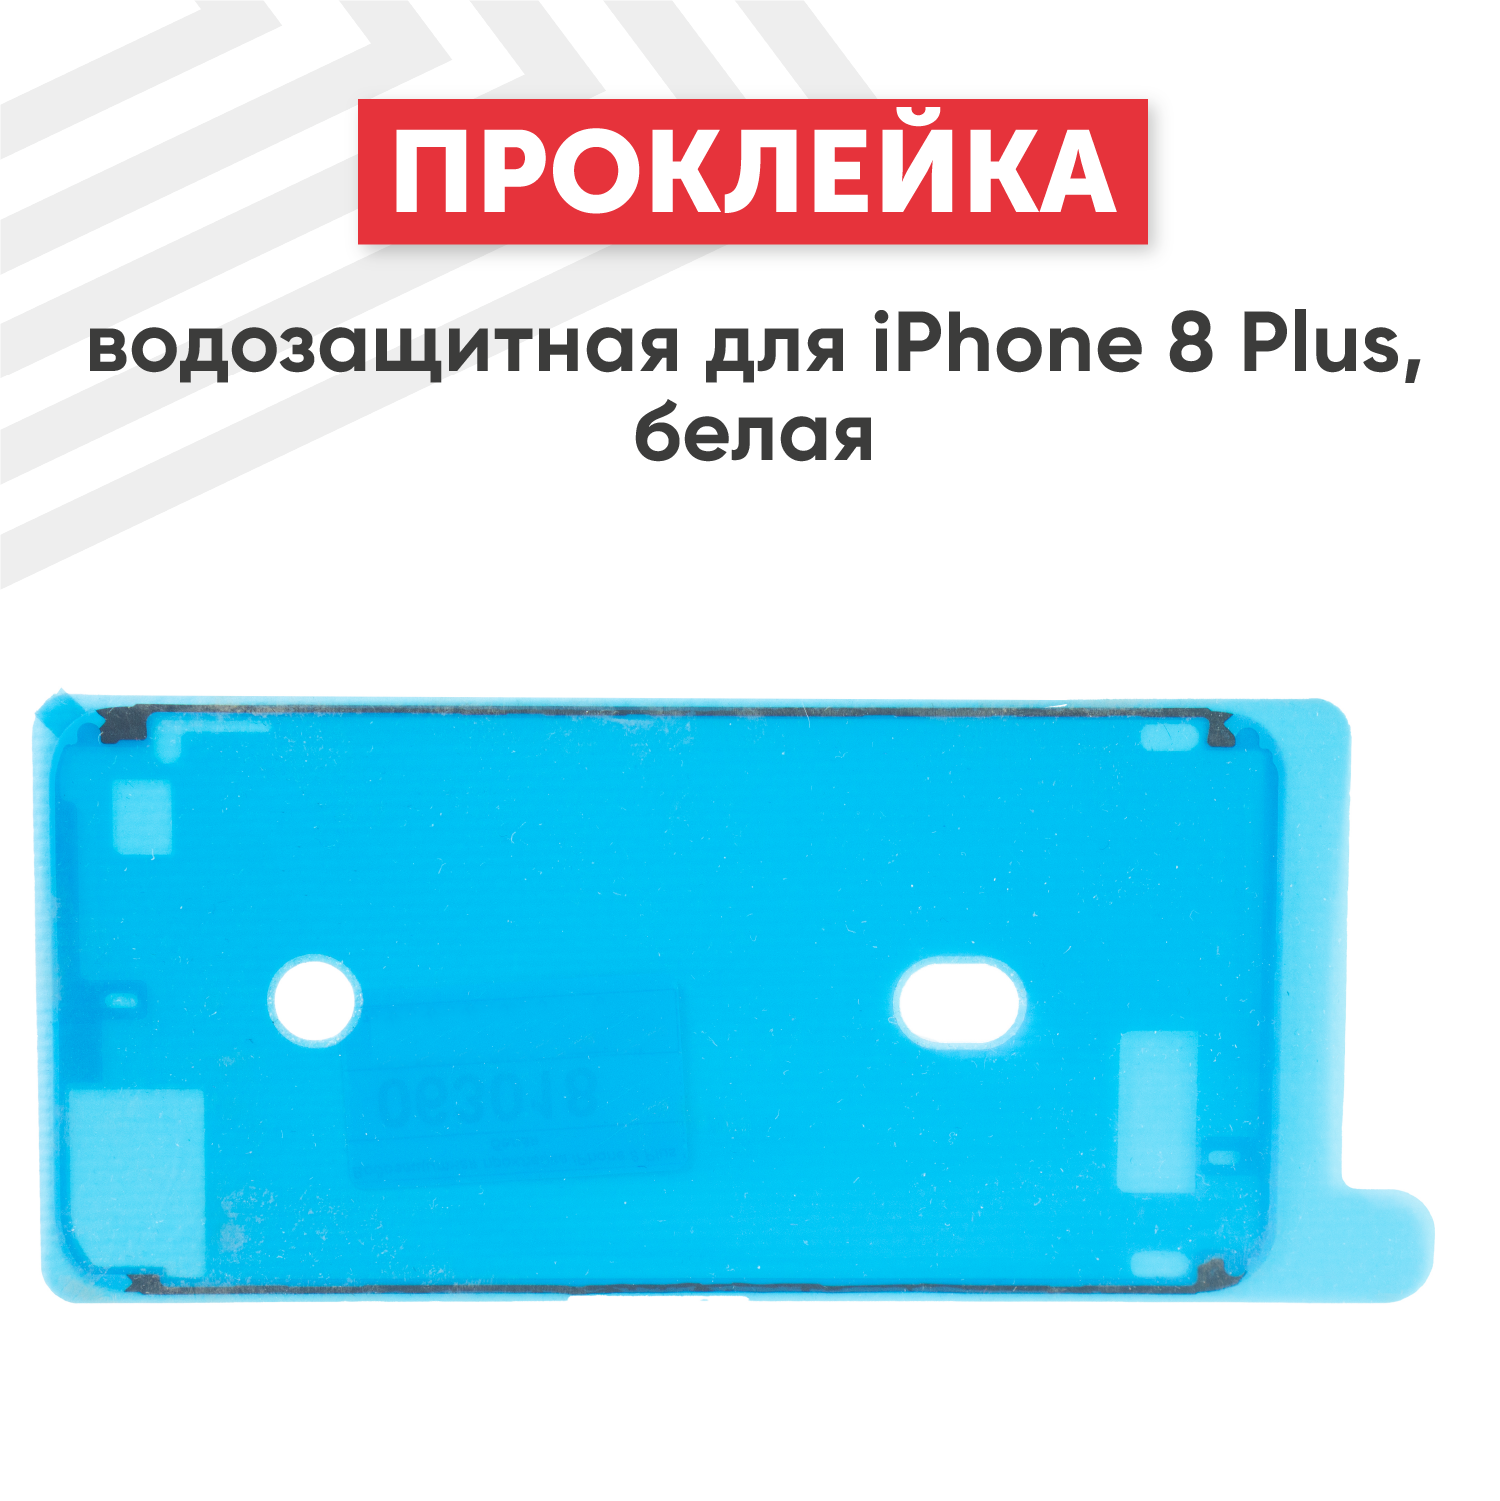 Водозащитная прокладка (проклейка, скотч) для мобильного телефона (смартфона) Apple iPhone 8 Plus, белая